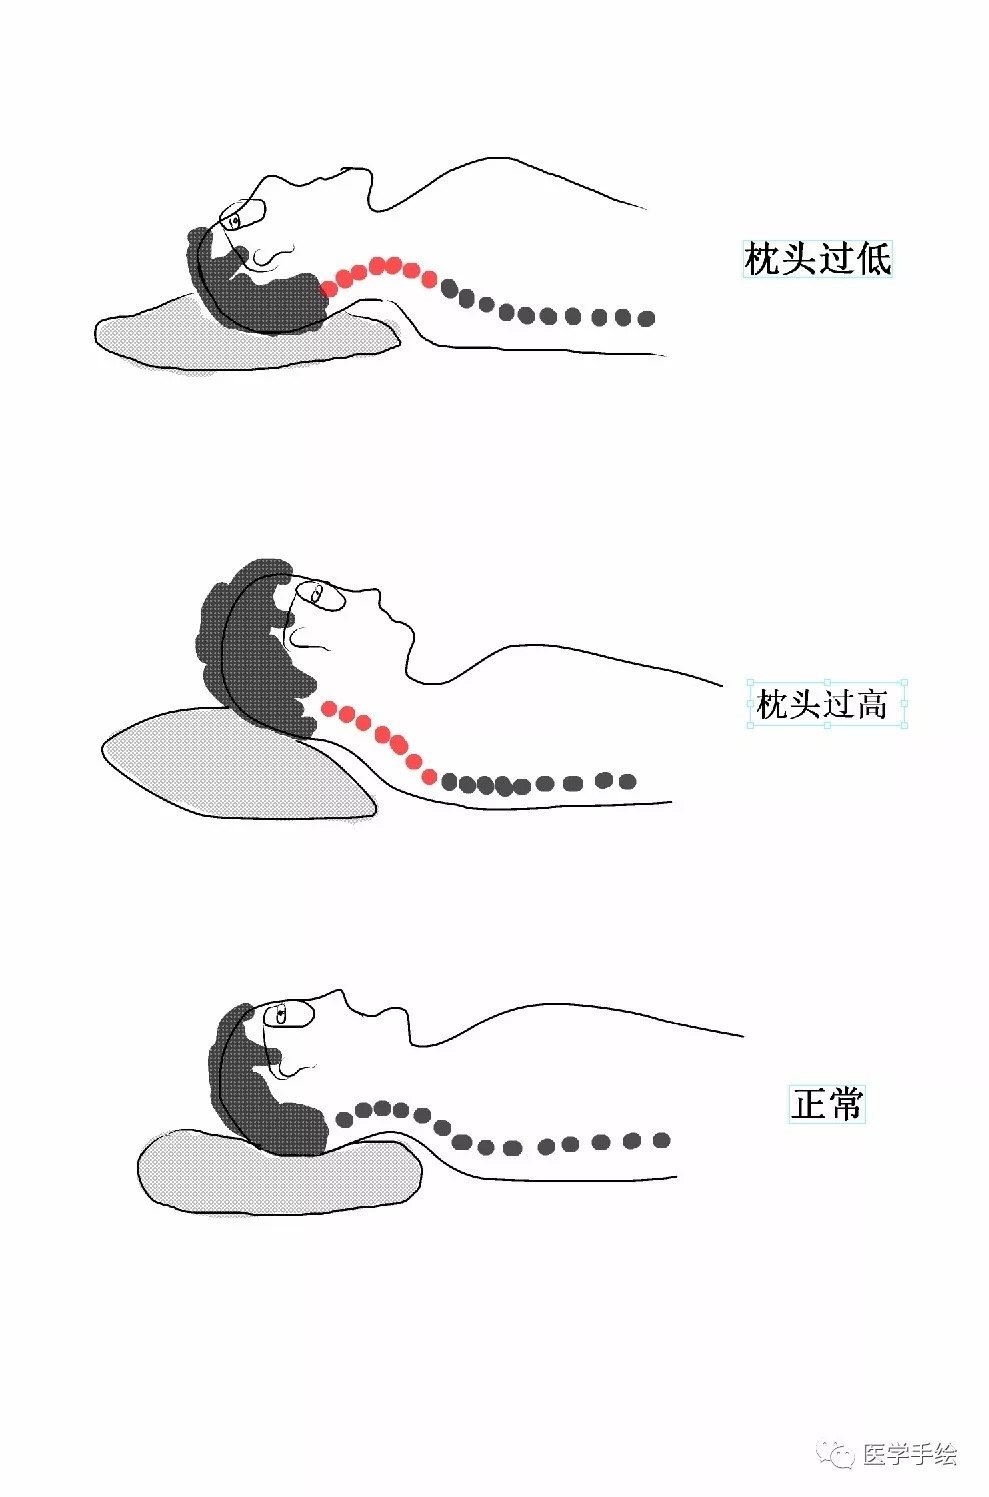 颈椎病患者如何选择枕头? 